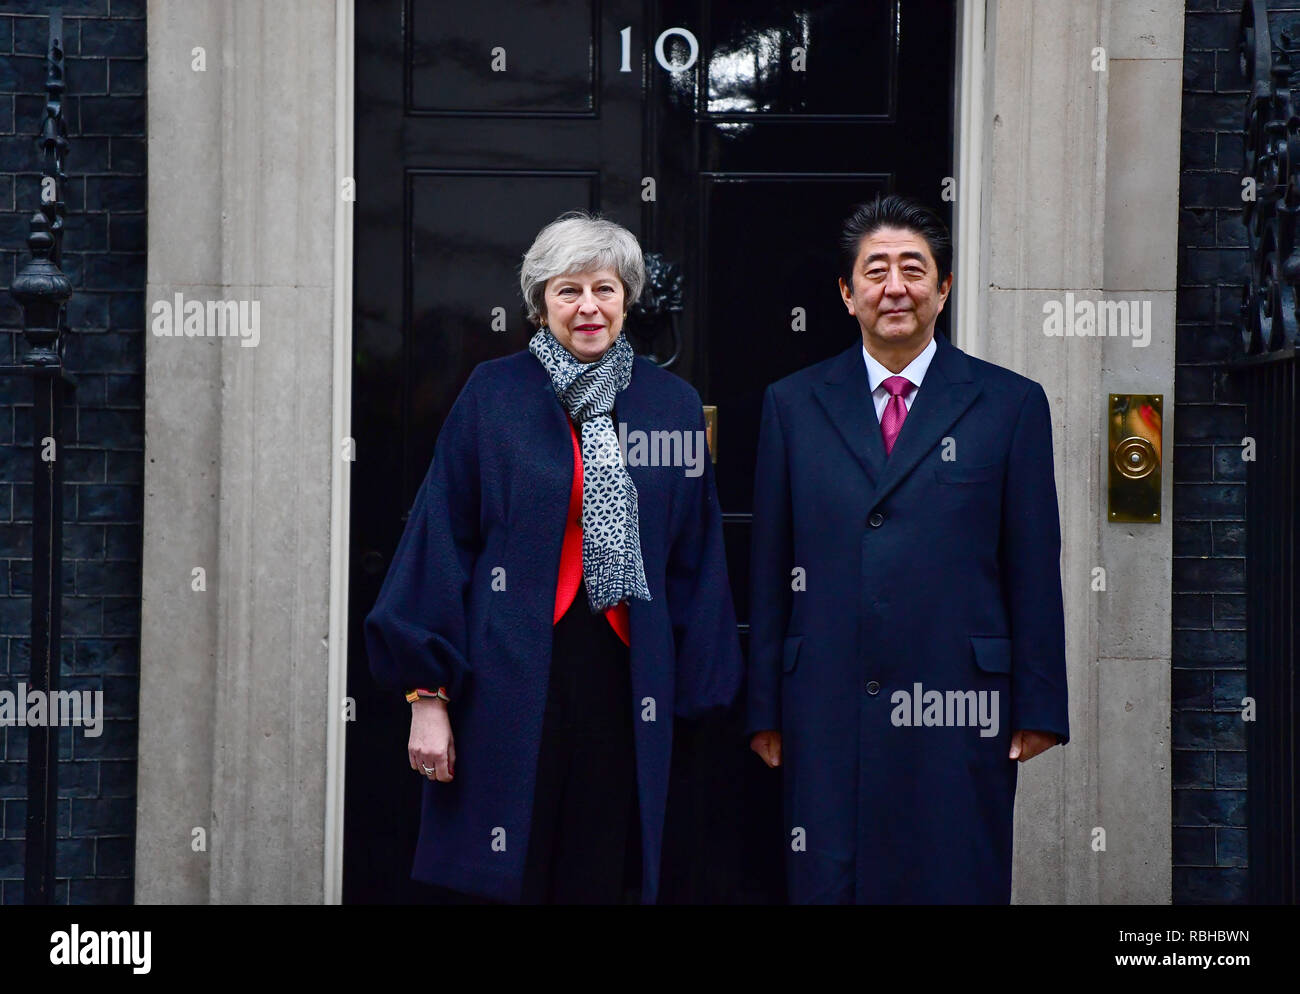 El Primer Ministro Teresa Mayo saluda al Primer Ministro japonés Shinzo Abe fuera el número 10 de Downing Street, Londres, antes de una reunión bilateral. Foto de stock